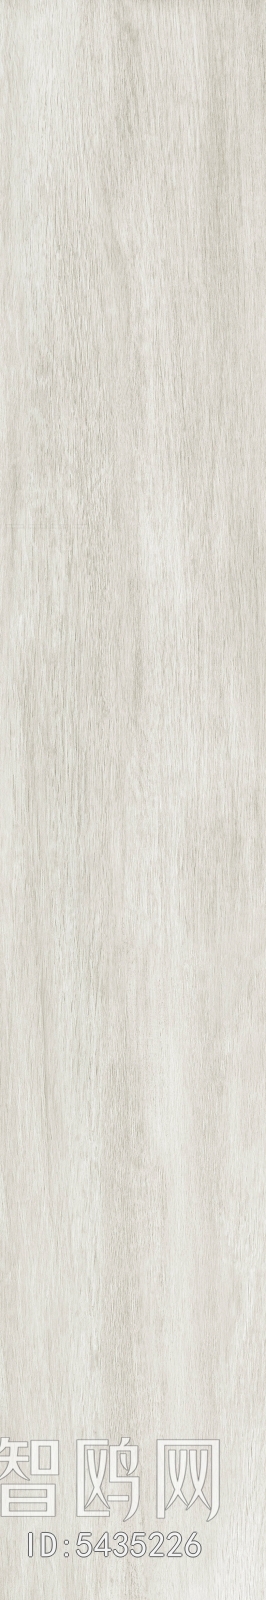 阿尔萨斯木白灰色超清木纹